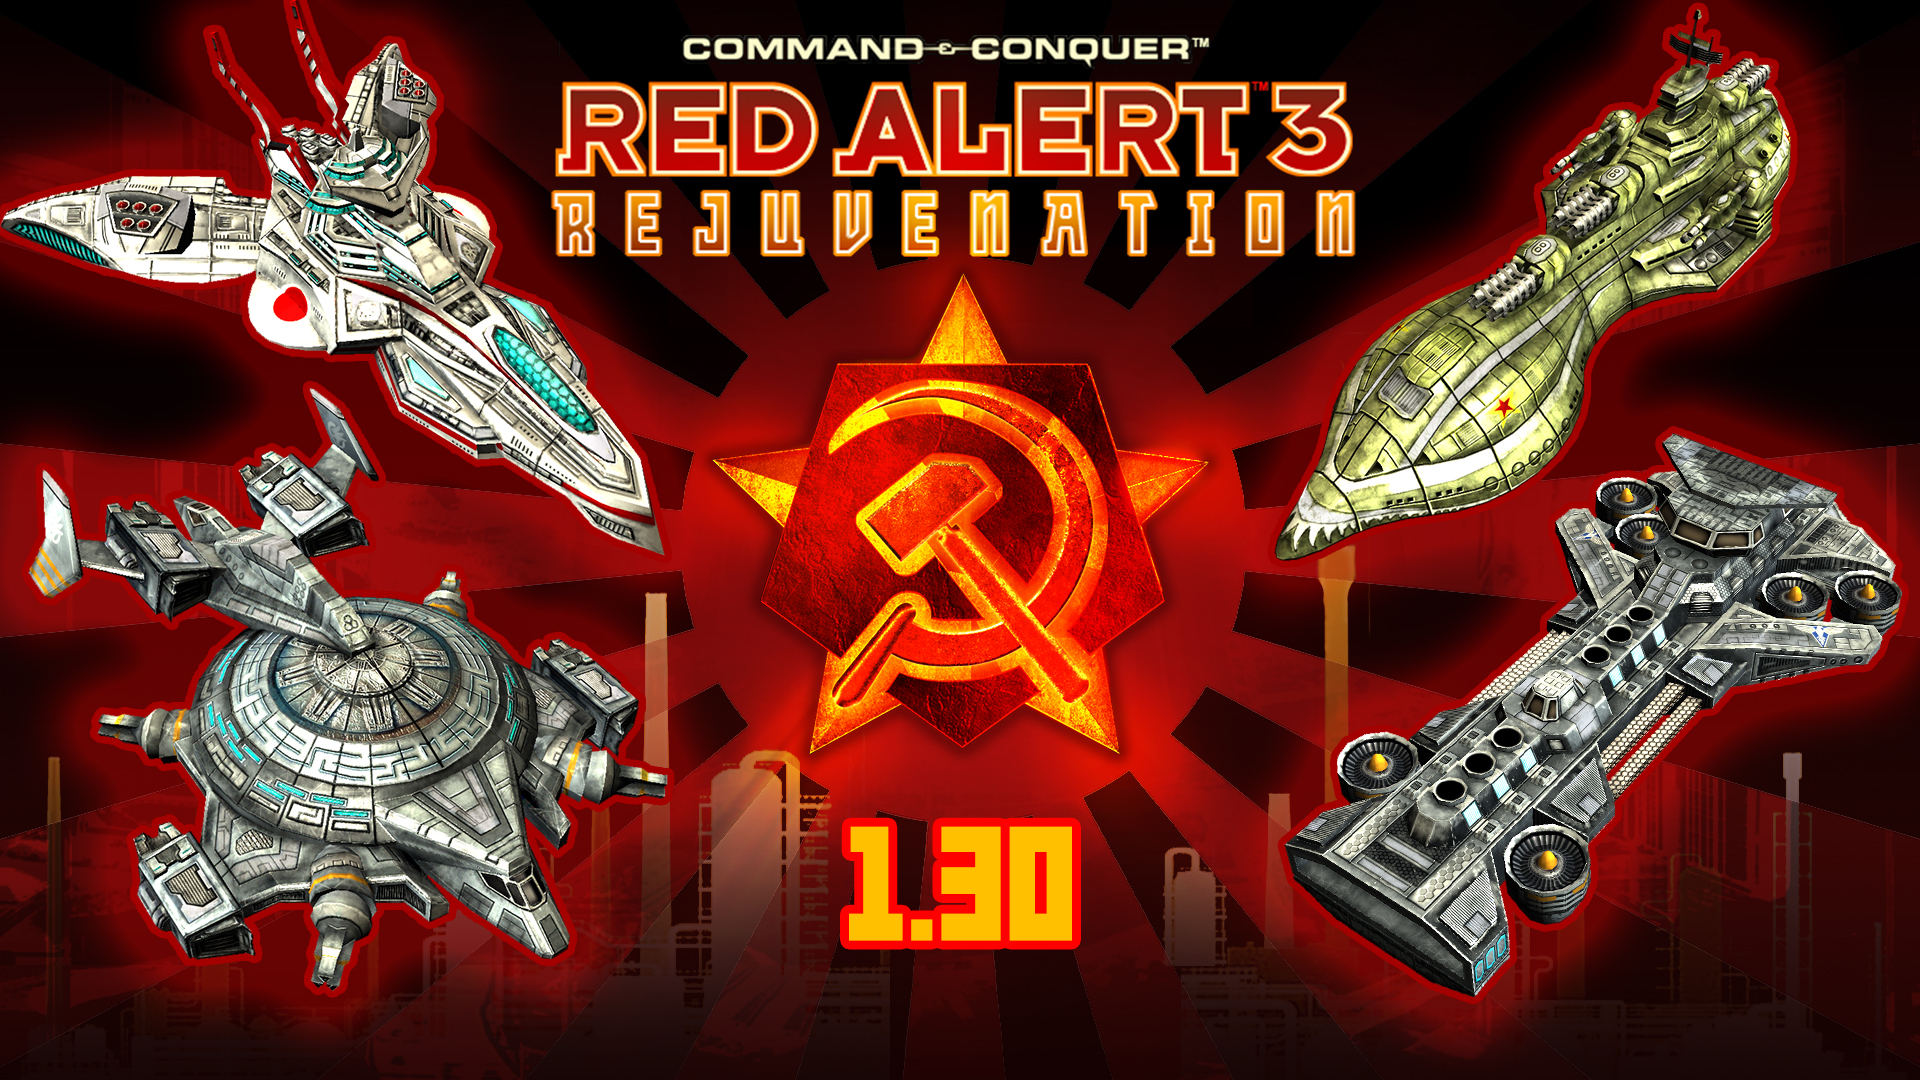 Red Alert Rejuvenation] New Version Update v 1.30 news - Mod DB